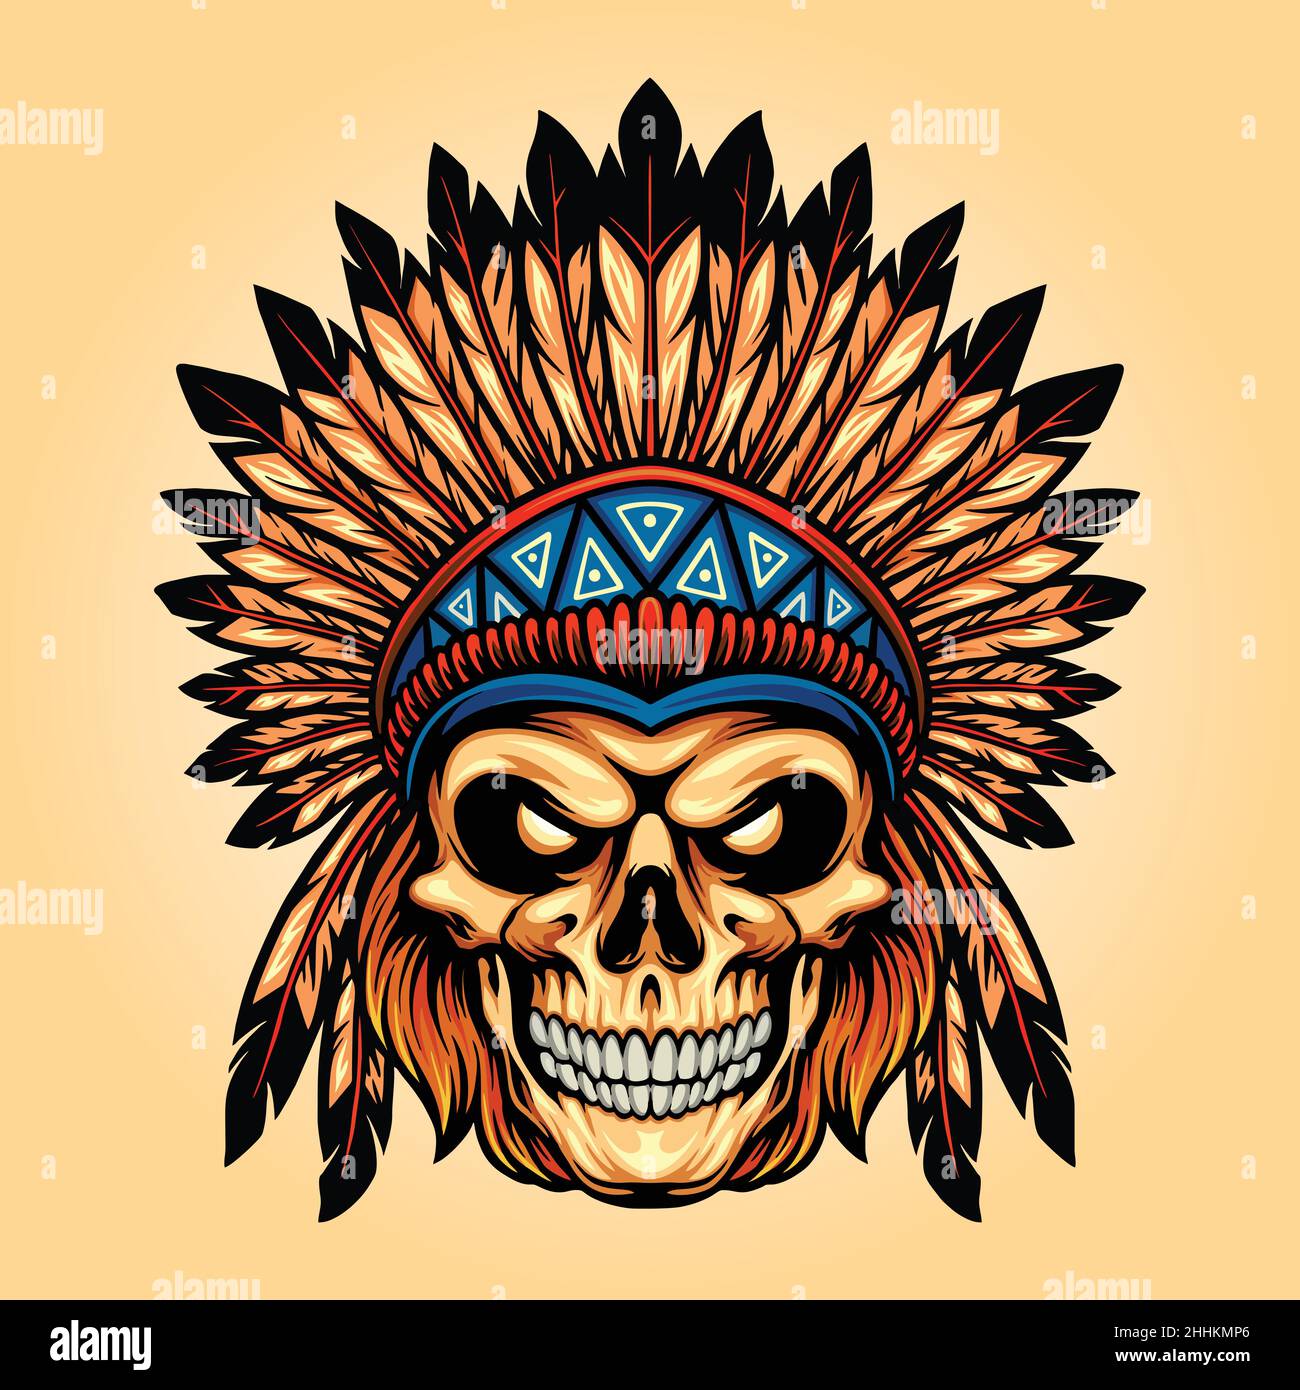 Indian Angry Skull isolierte Vektor-Illustrationen für Ihre Arbeit Logo, Maskottchen Merchandise T-Shirt, Aufkleber und Label-Designs, Poster, Grußkarten Stock Vektor